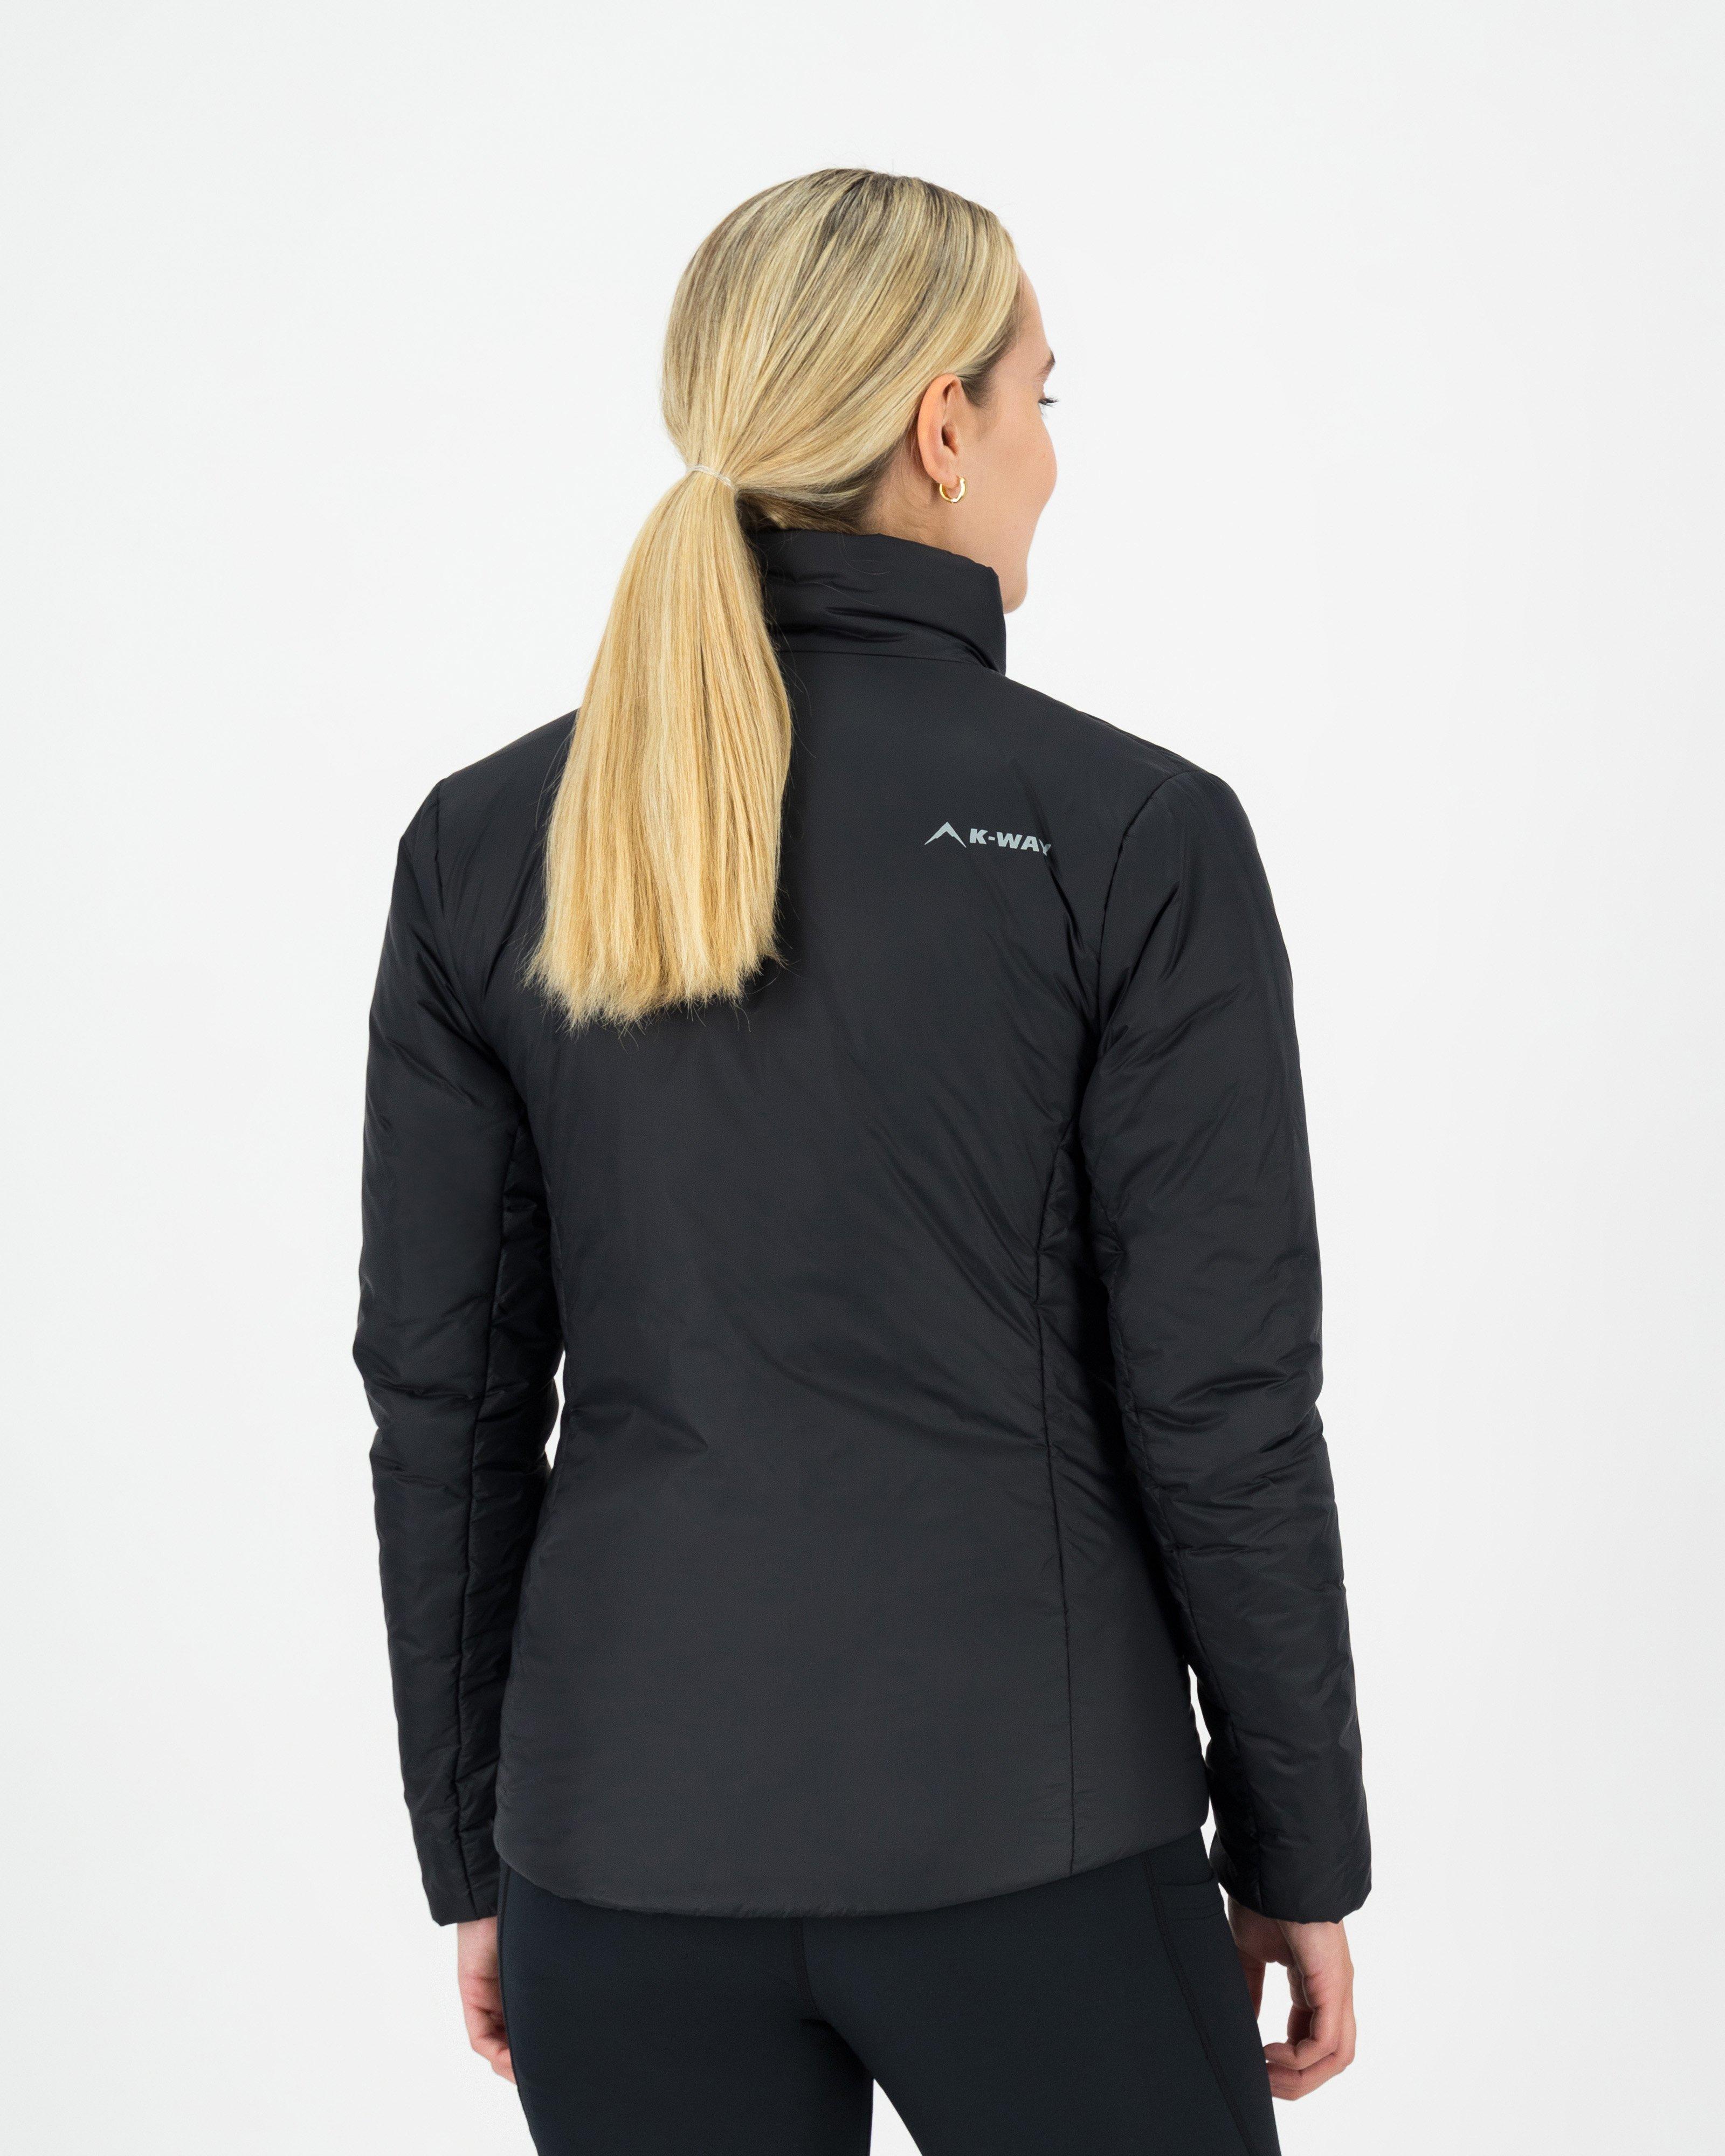 K-Way Women’s Linear Sheet Insulated Jacket -  Black